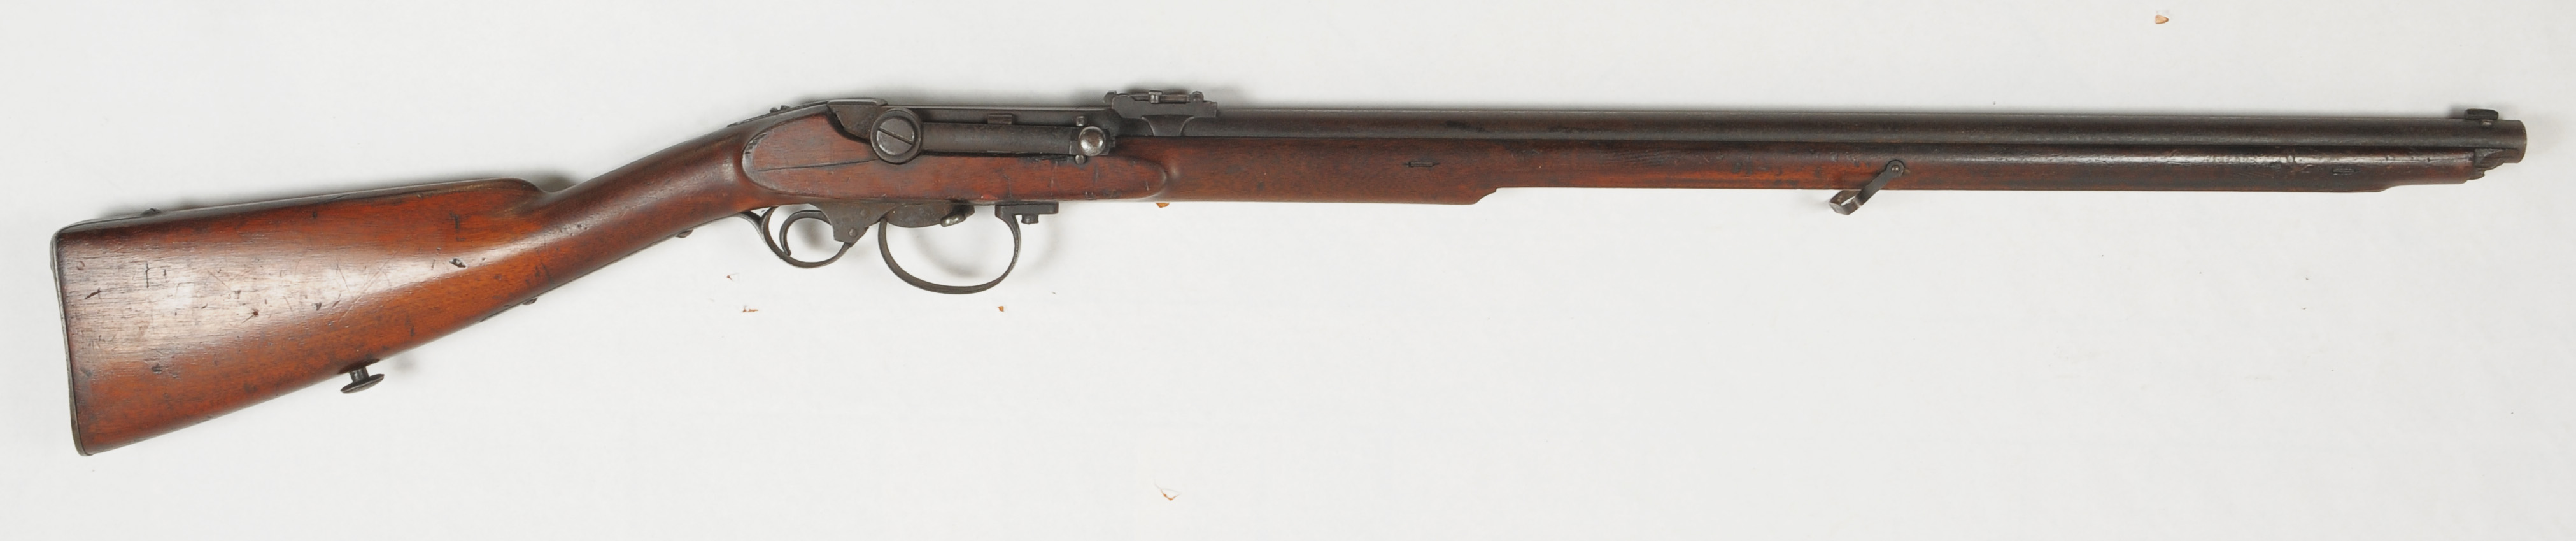 ./guns/rifle/bilder/Rifle-Kongsberg-Kammerlader-1863-1-1.jpg